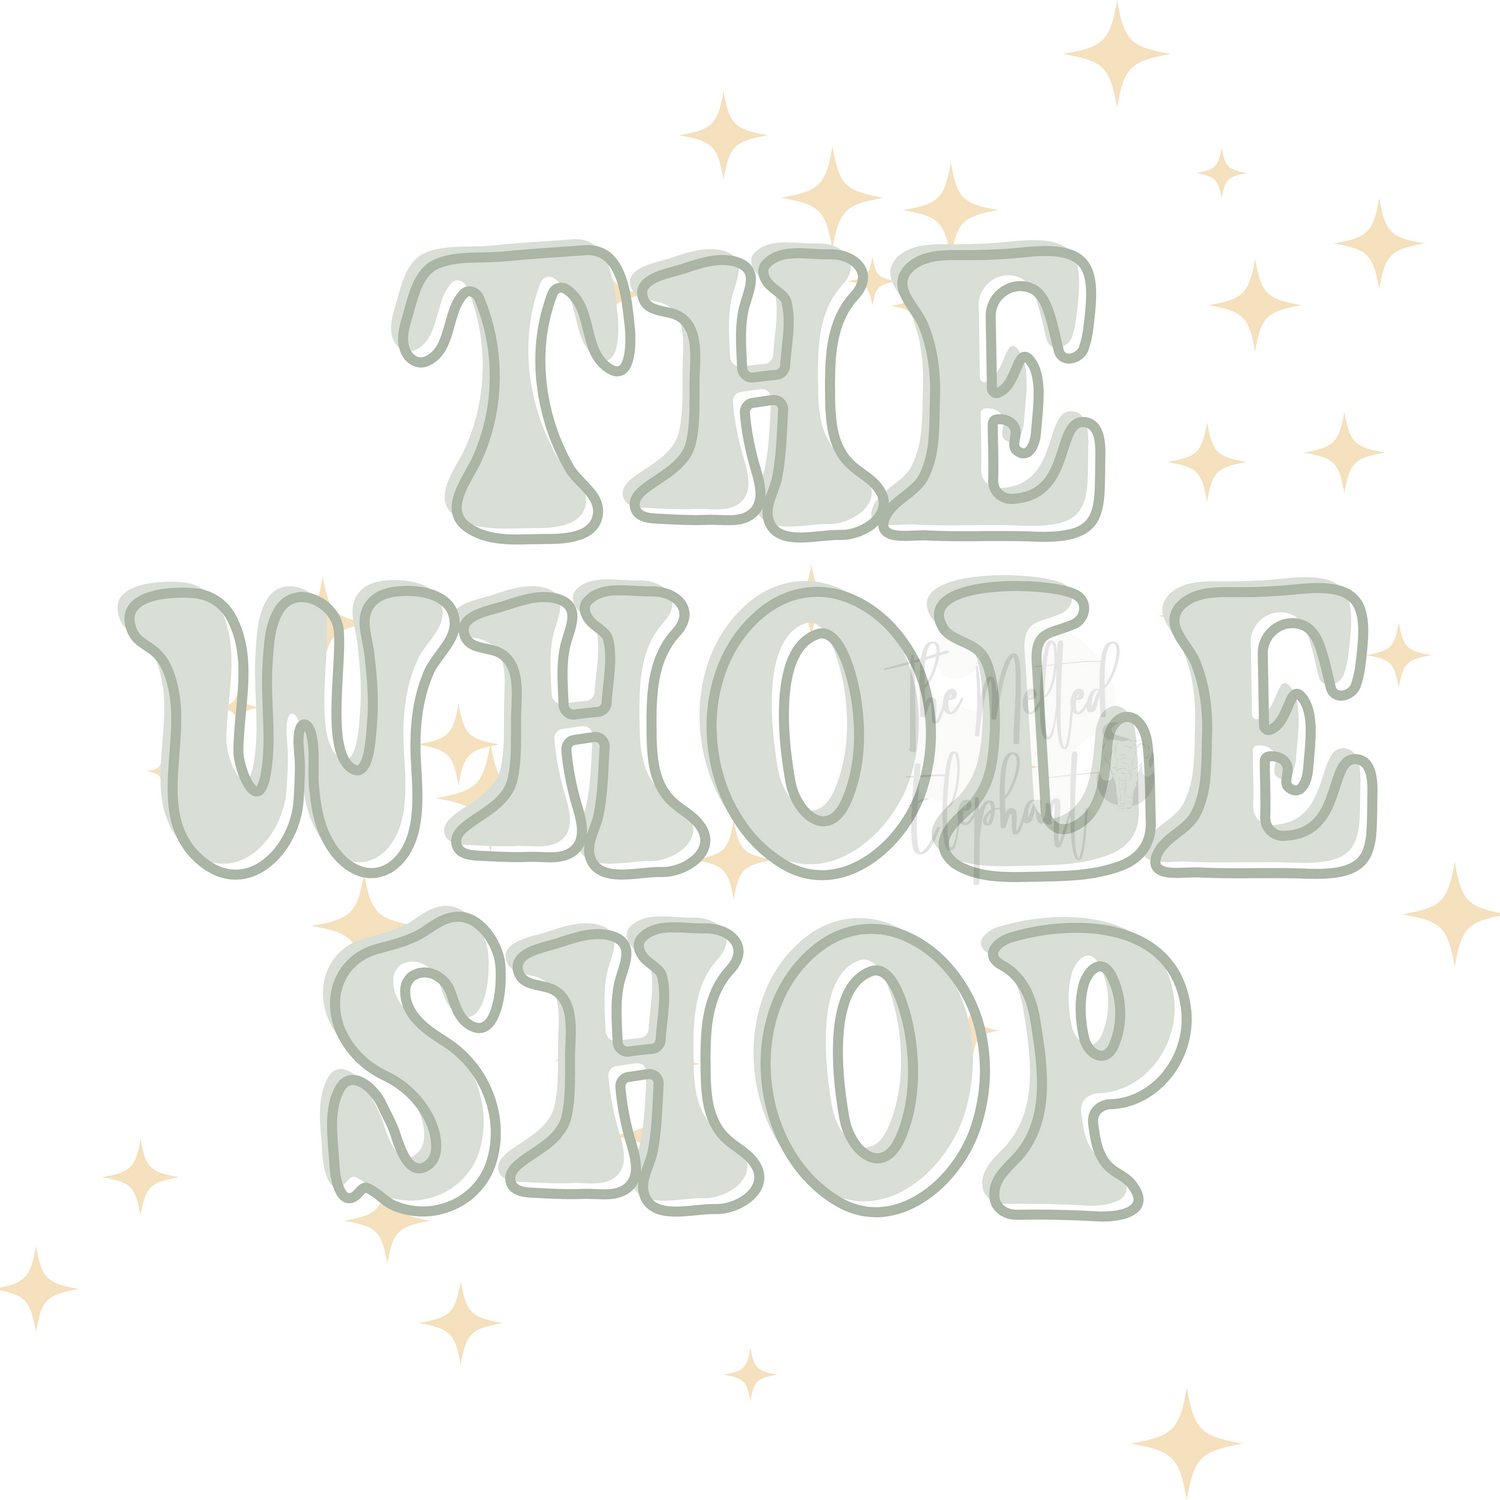 The Whole Retail Shop